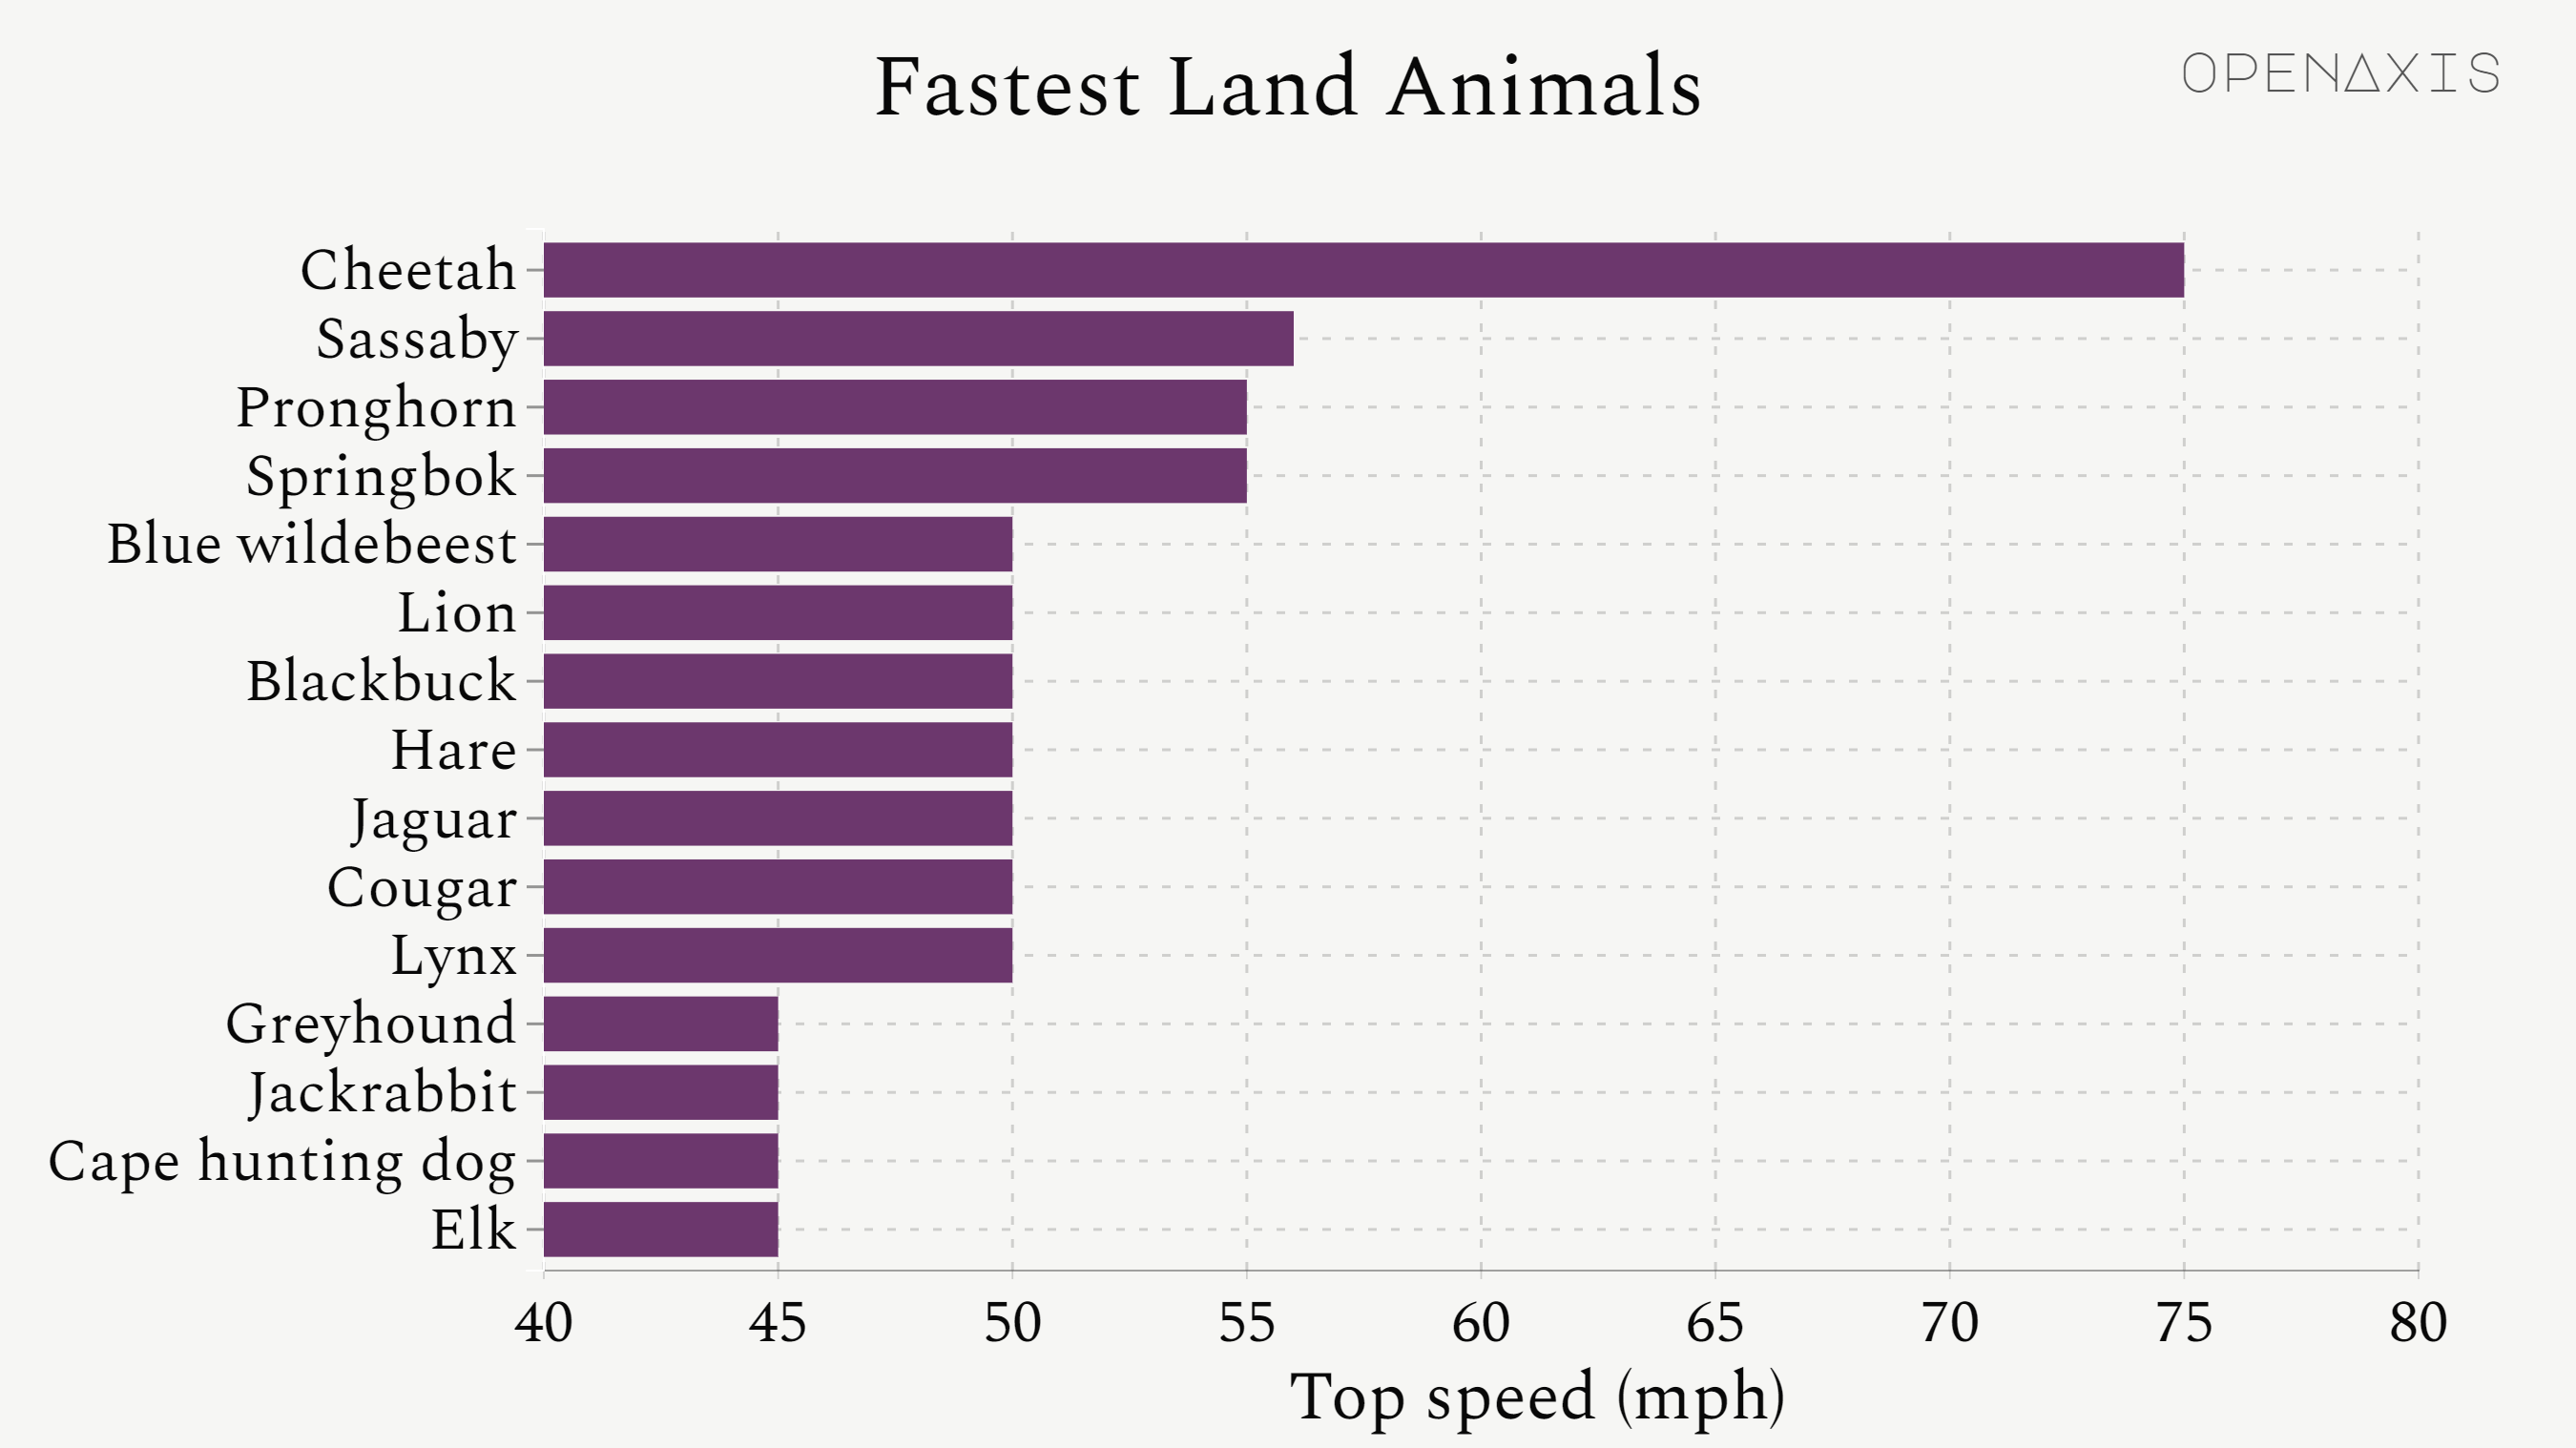 "Fastest Land Animals"